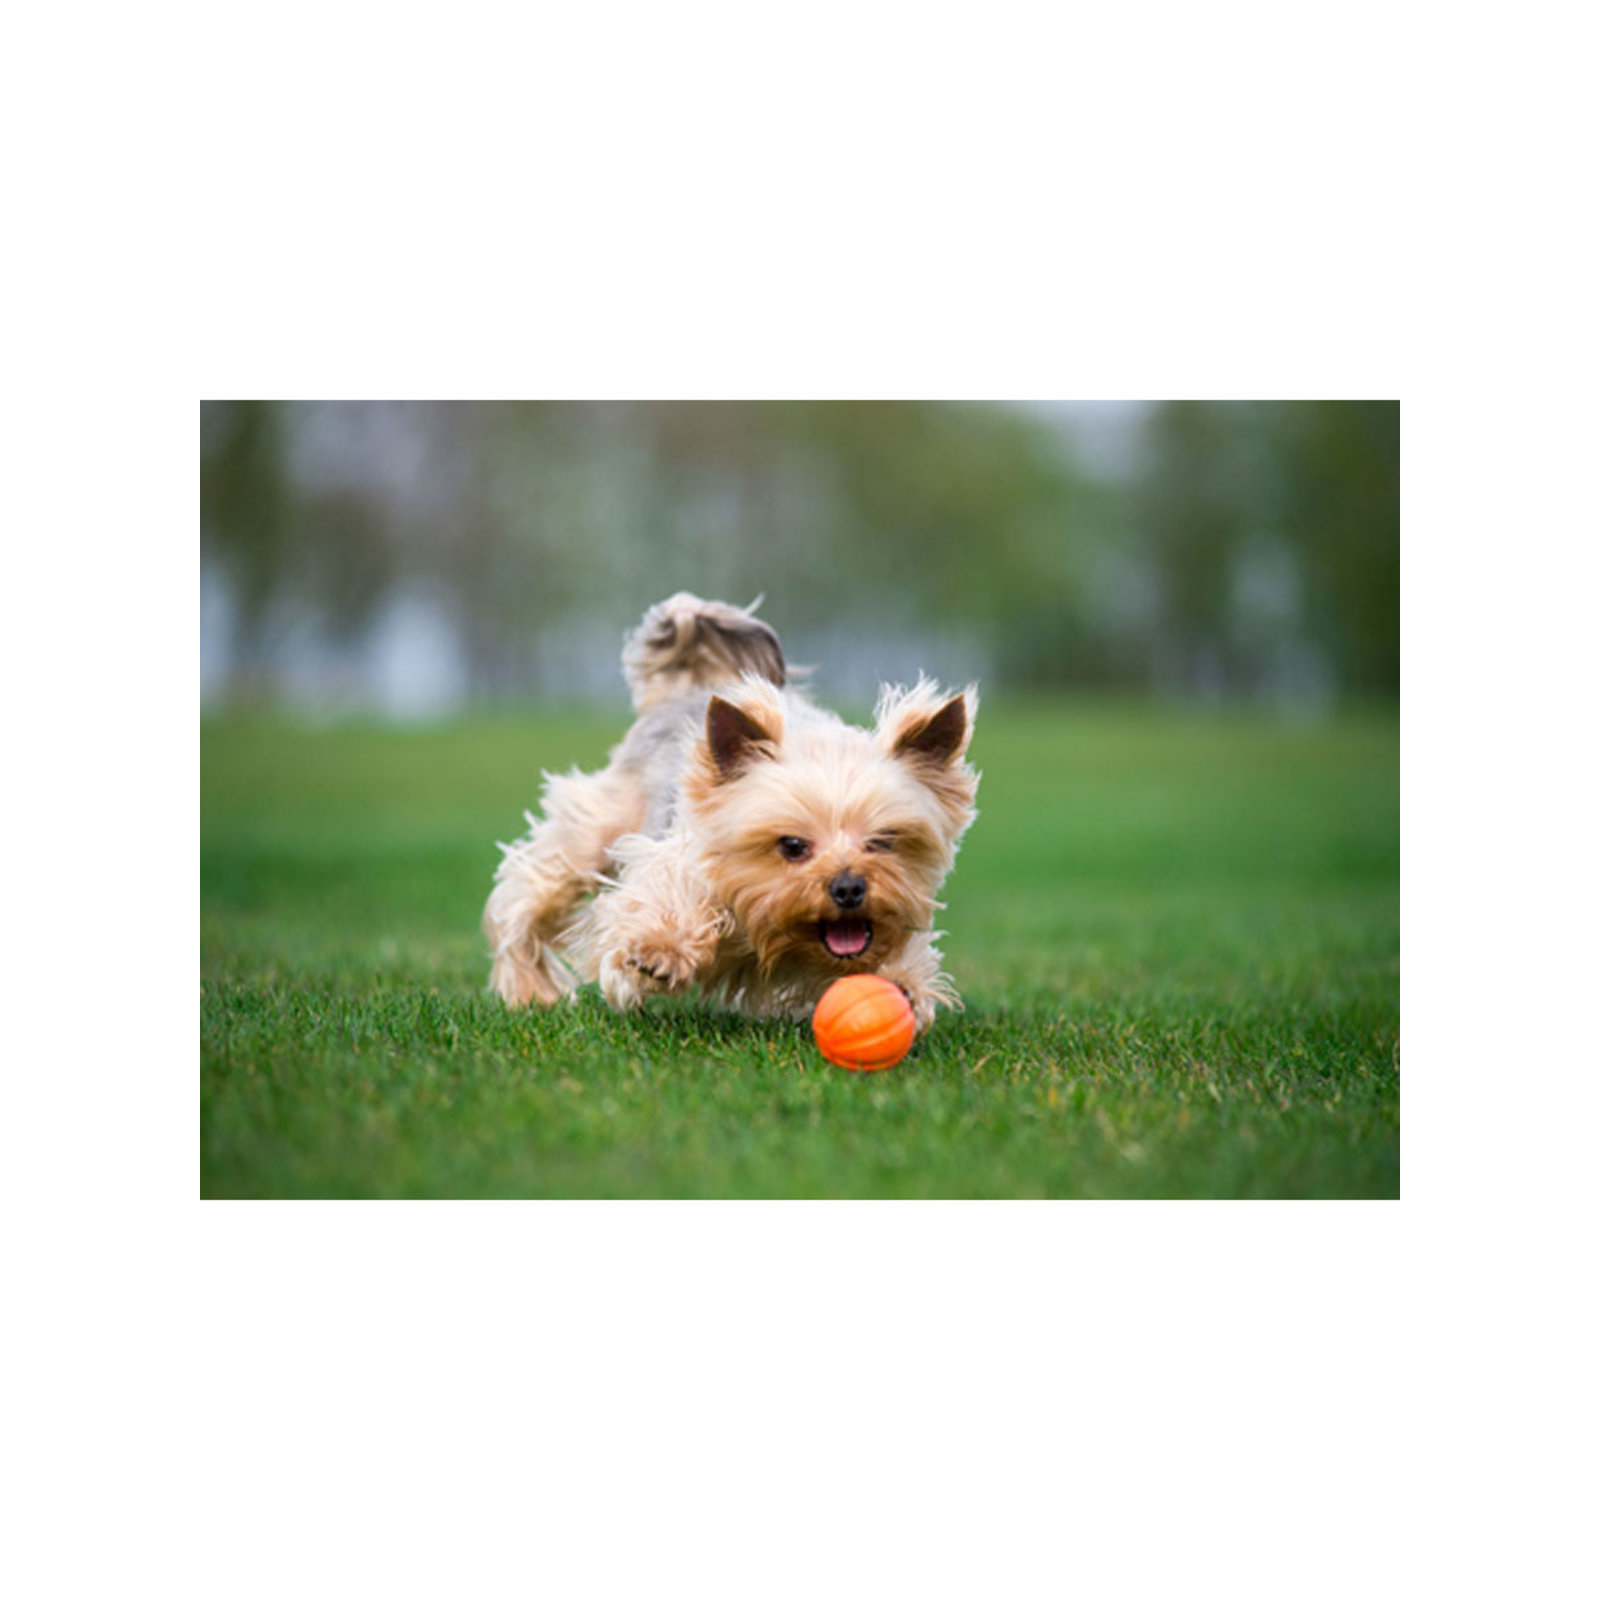 Игрушка для собак Liker Мячик 5 см (6298) изображение 3